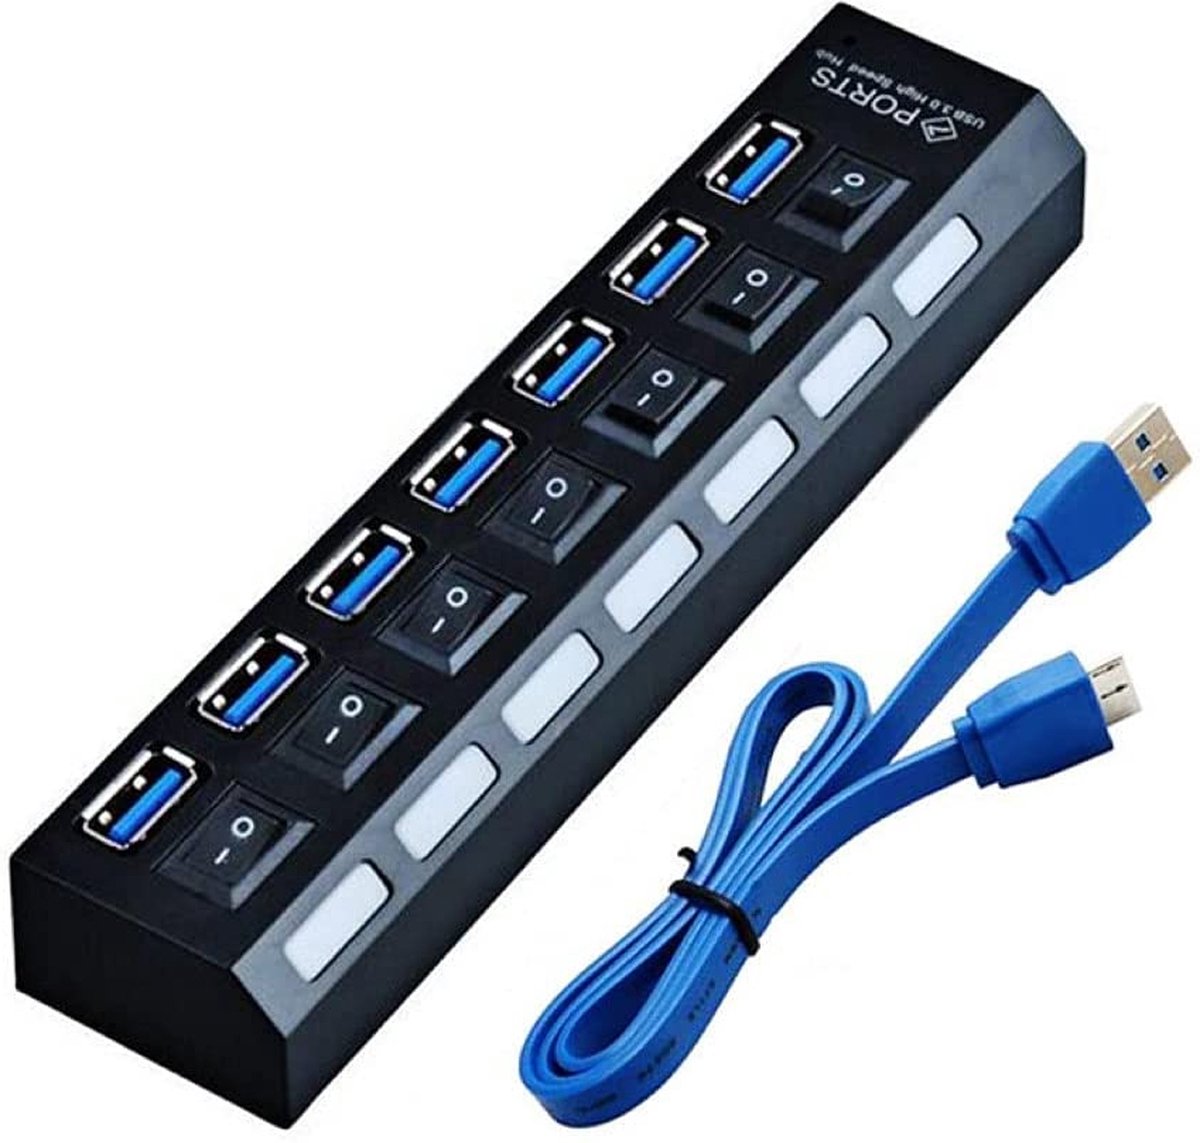 Acheter Hub de chargeur multiple USB 2.0 4/7 Ports + adaptateur